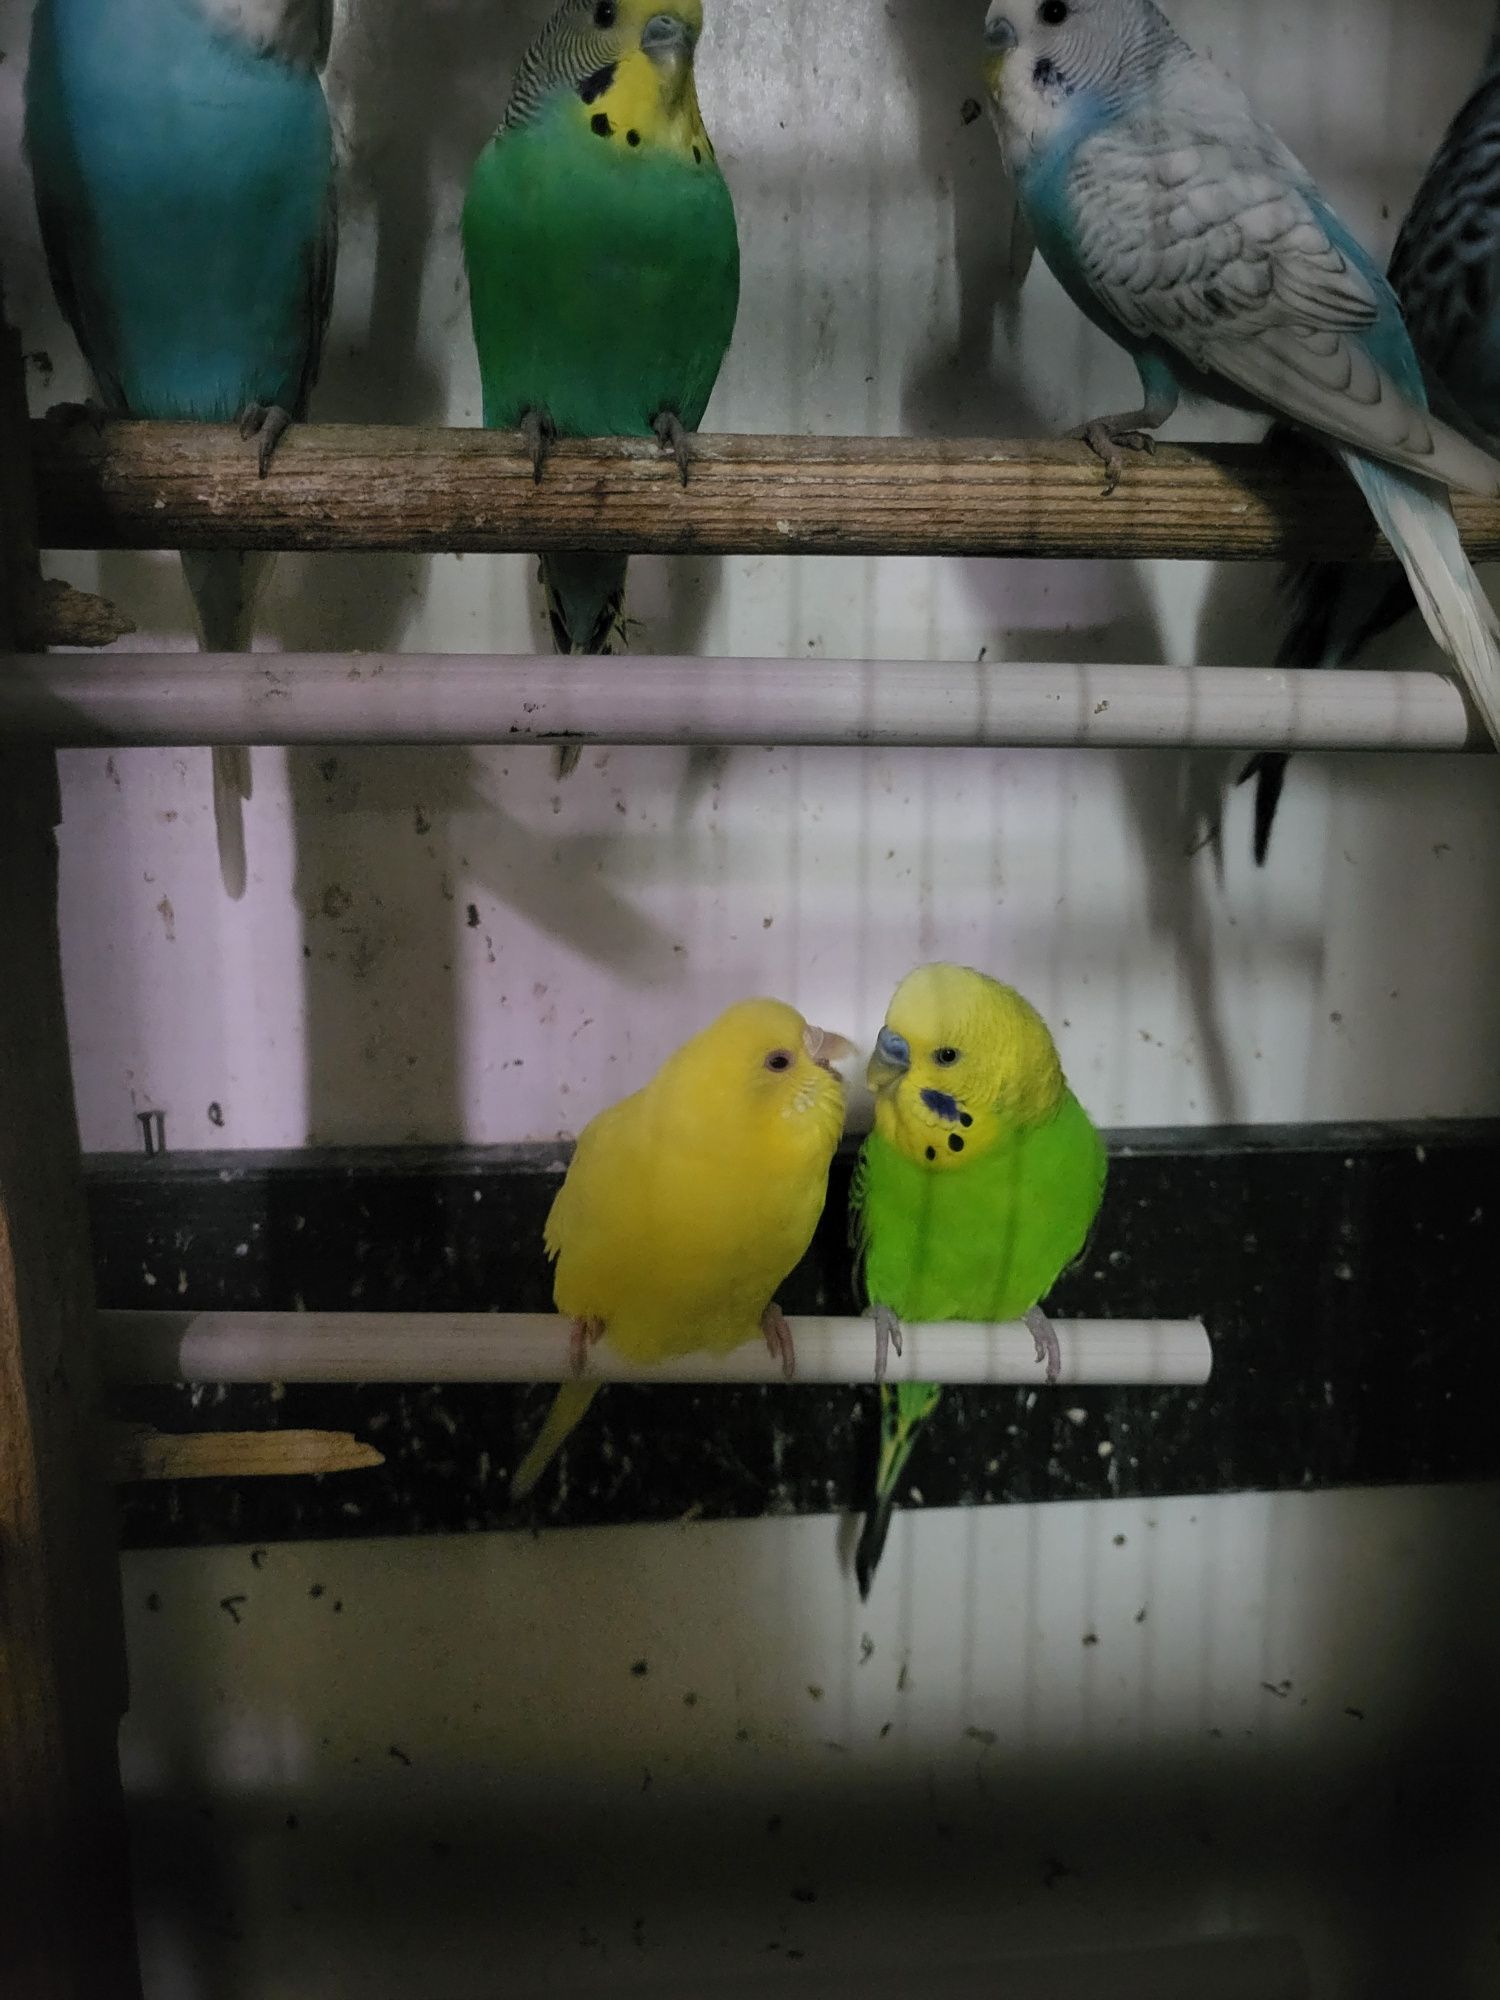 Papagali colorați